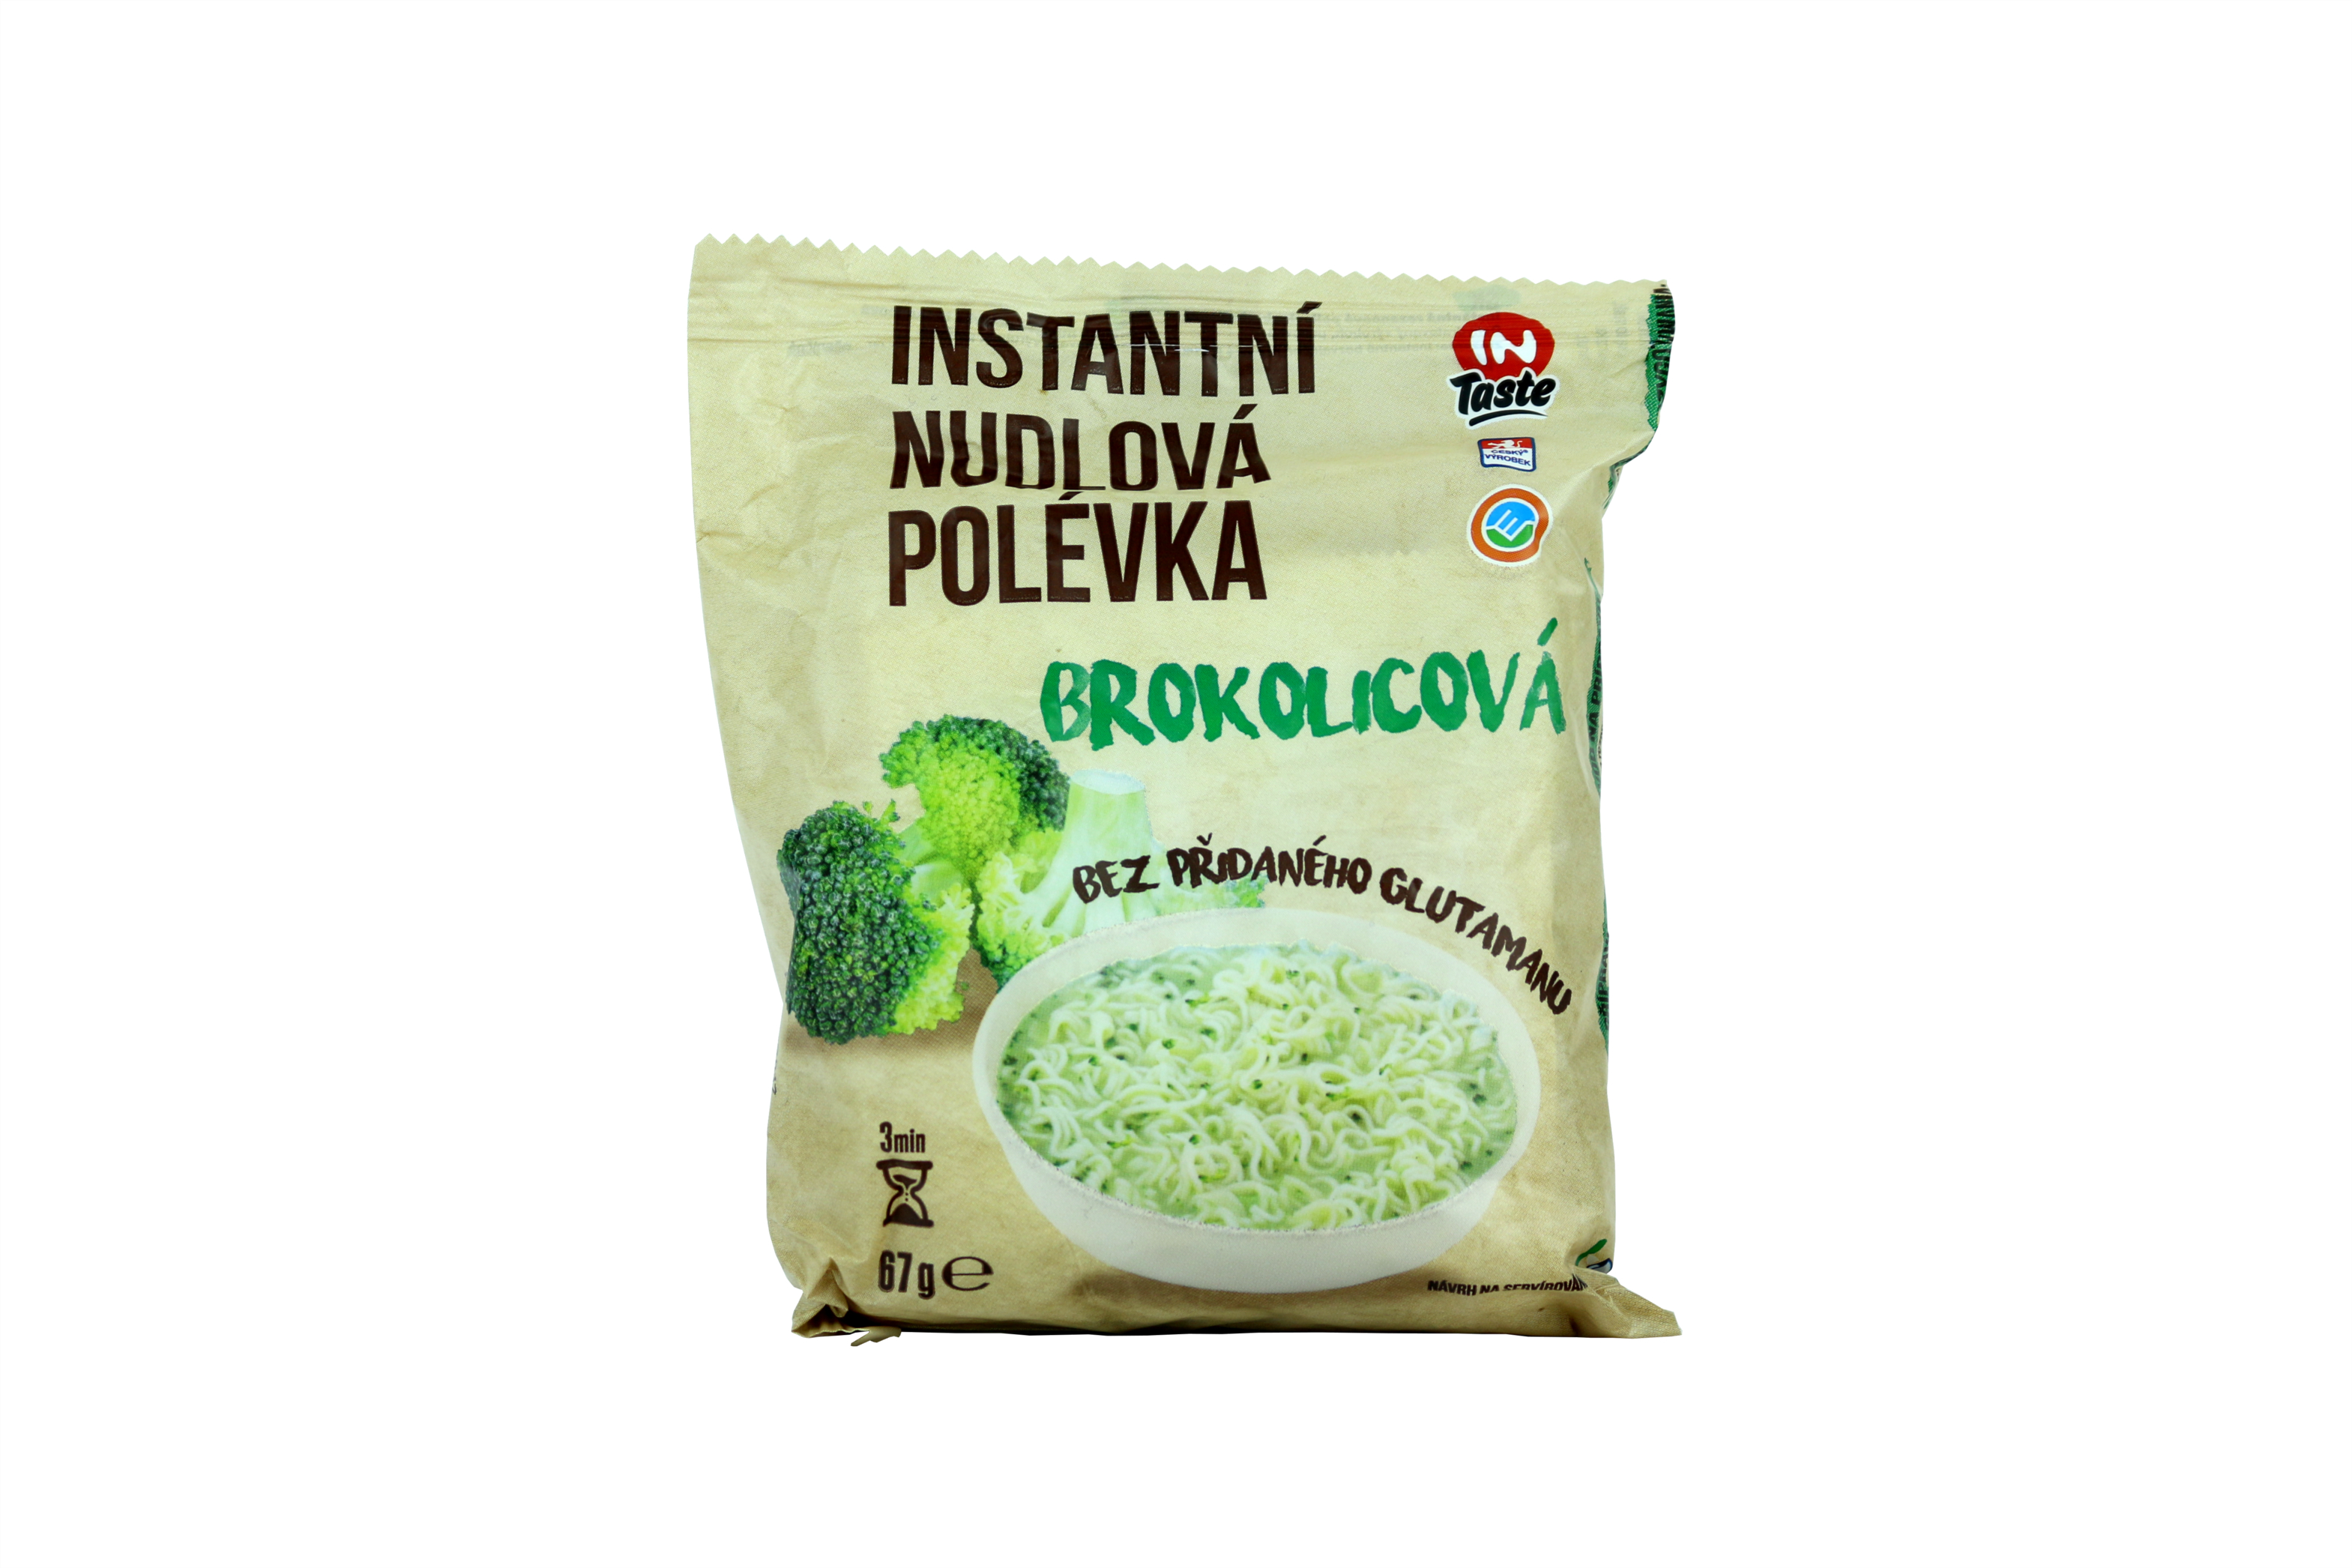 Instantní nudlová polévka brokolicová 67 g